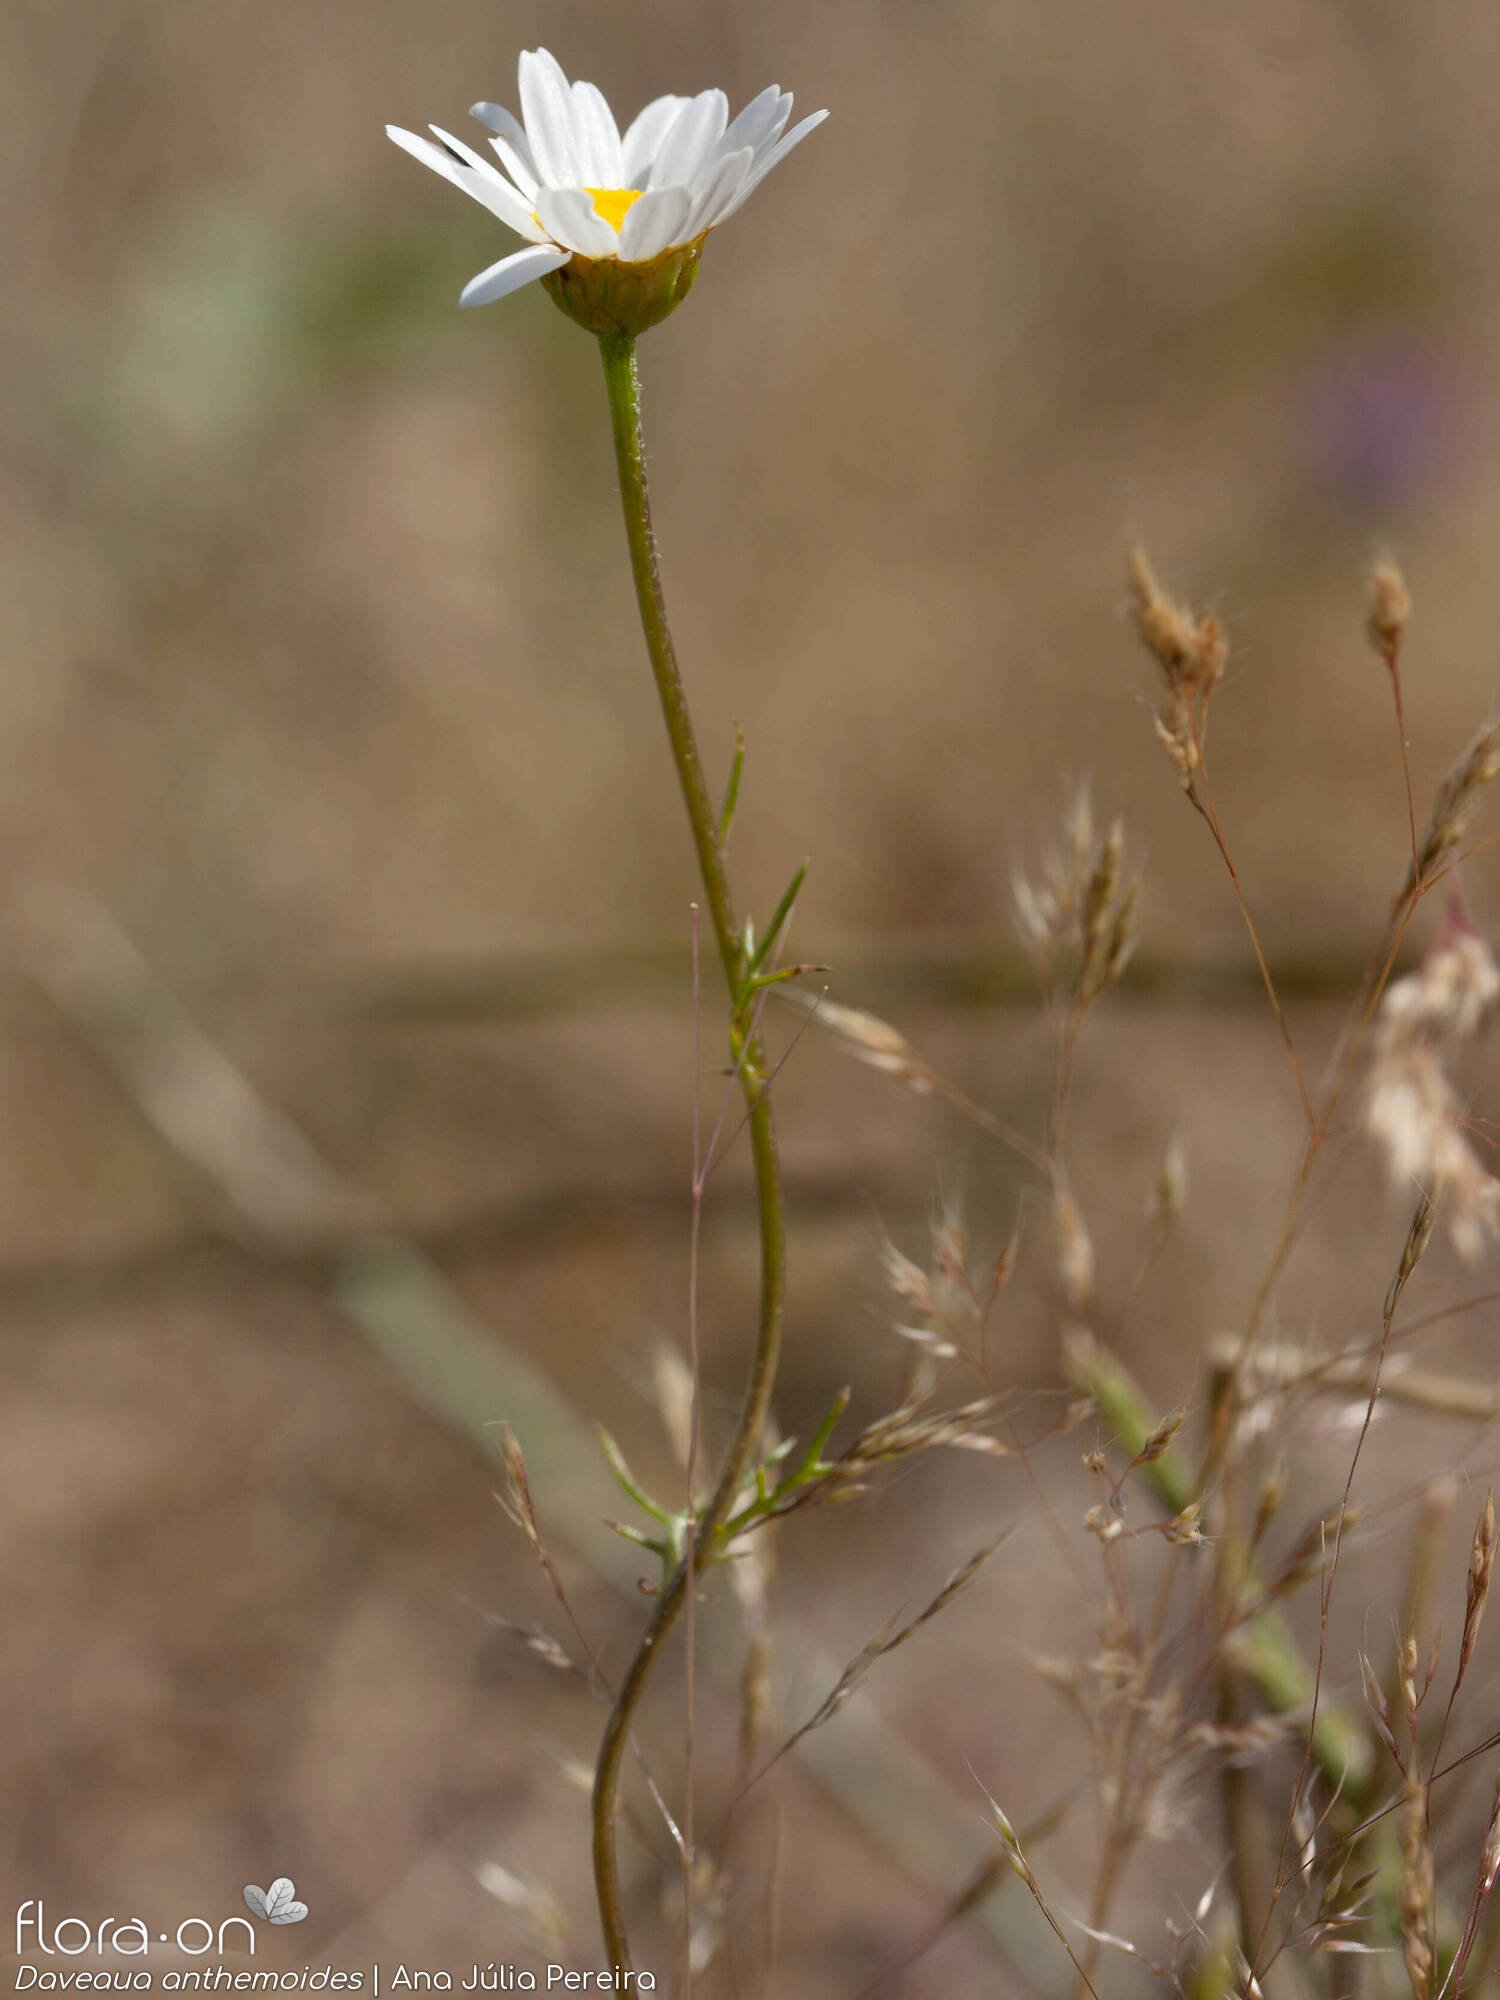 Daveaua anthemoides - Flor (geral) | Ana Júlia Pereira; CC BY-NC 4.0